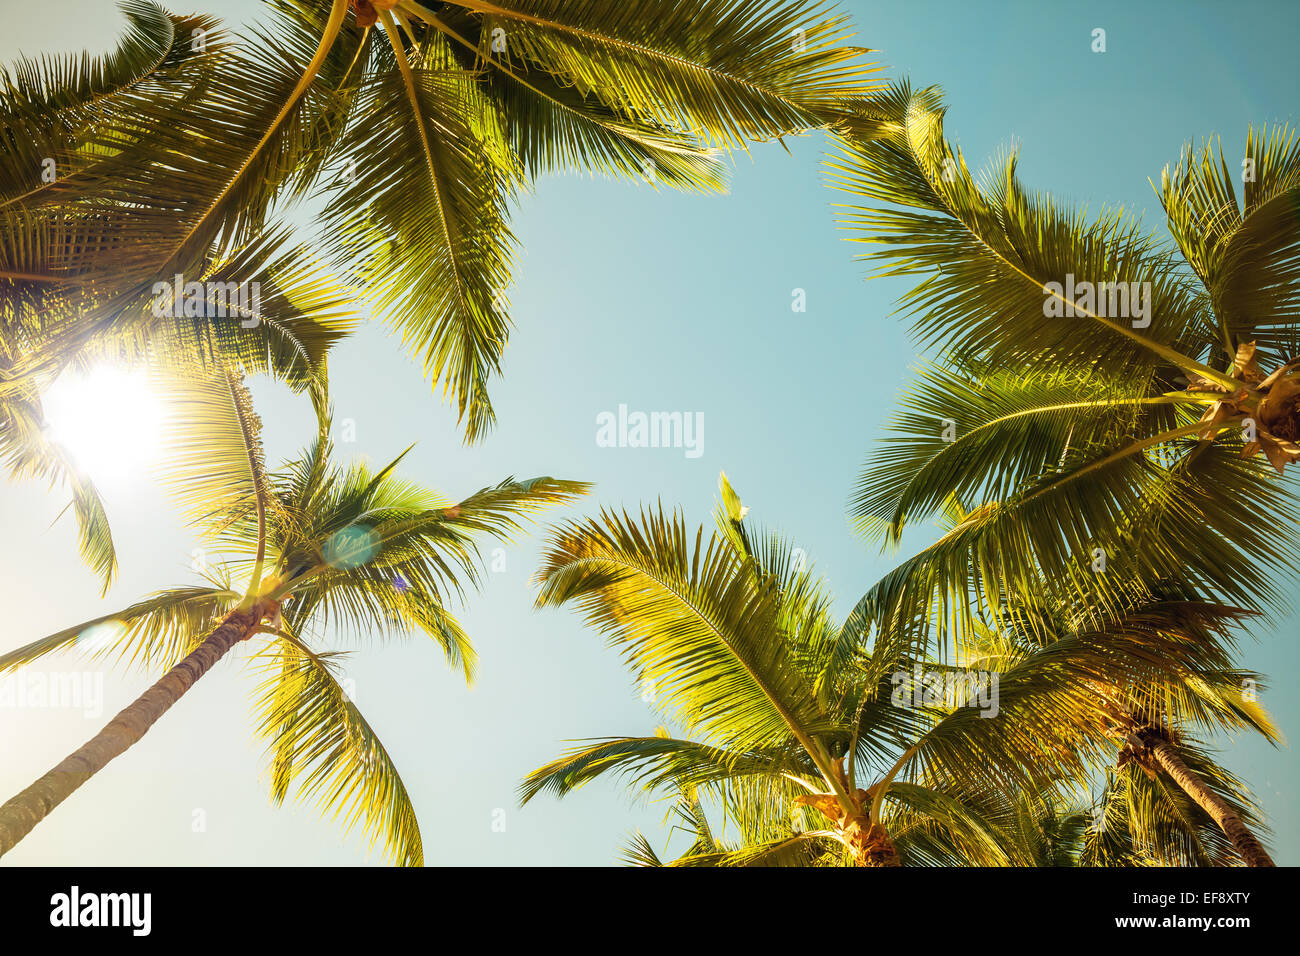 Kokosnuss-Palmen und strahlende Sonne über hellen Himmelshintergrund. Vintage-Stil. Getönten Foto mit Filterwirkung Stockfoto